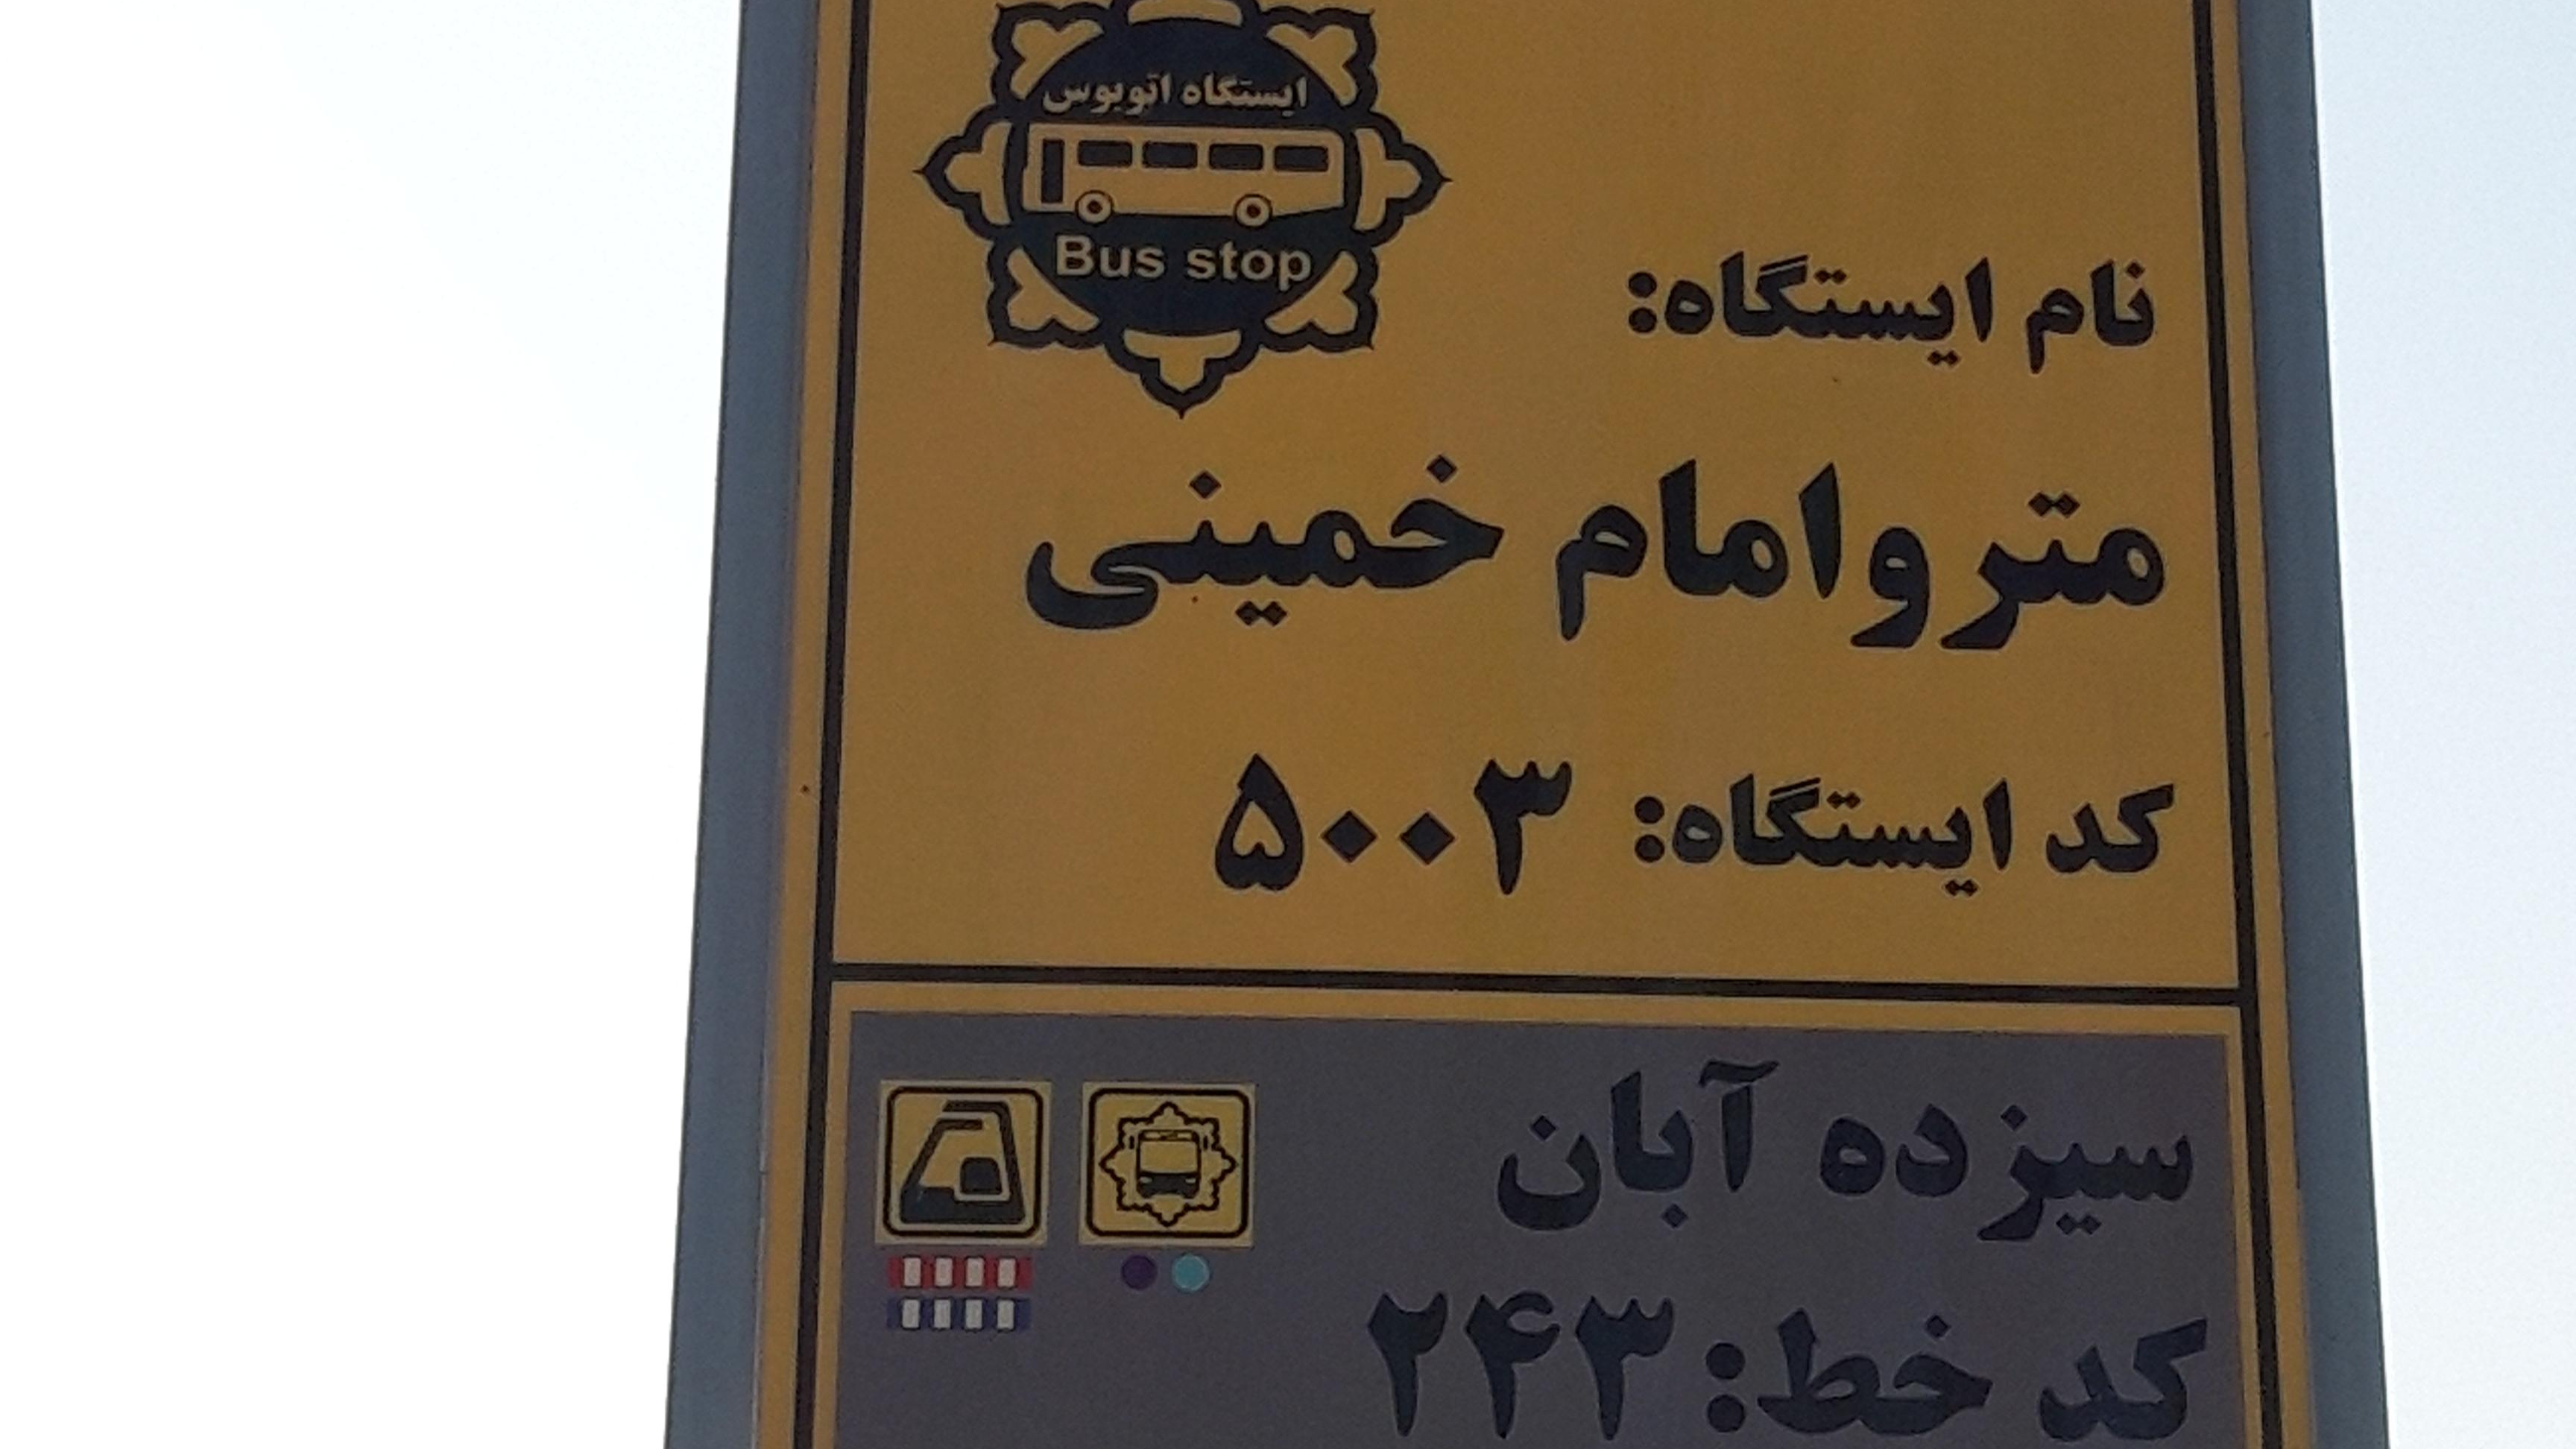 ایستگاه اتوبوس مترو امام خمینی سیزده آبان